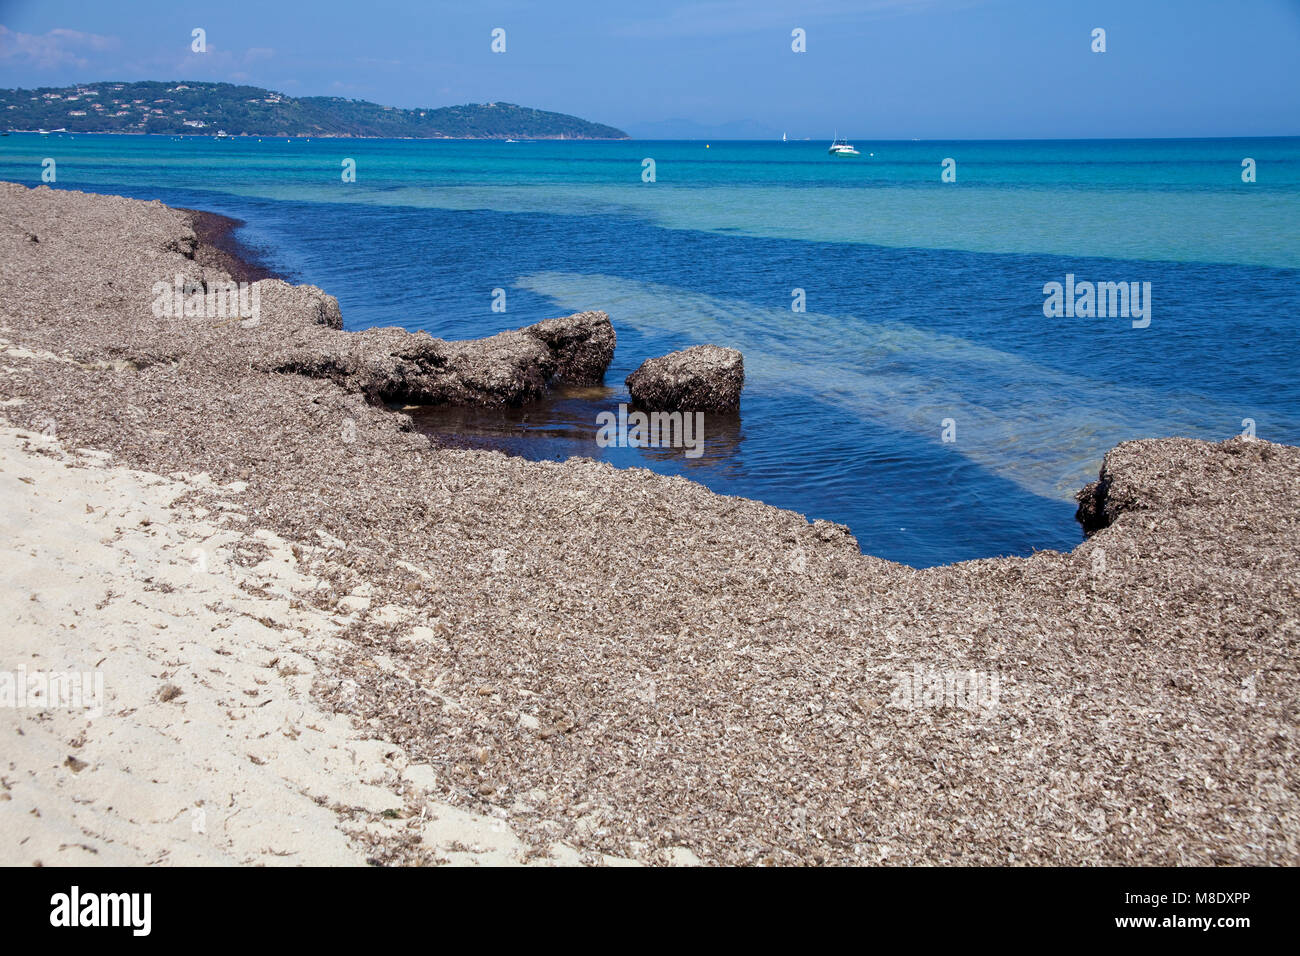 Les algues sur le rivage à la plage de Pampelonne, plage populaire à Saint-Tropez, Côte d'Azur, France Sud, Côte d'Azur, France, Europe, mer Méditerranée Banque D'Images